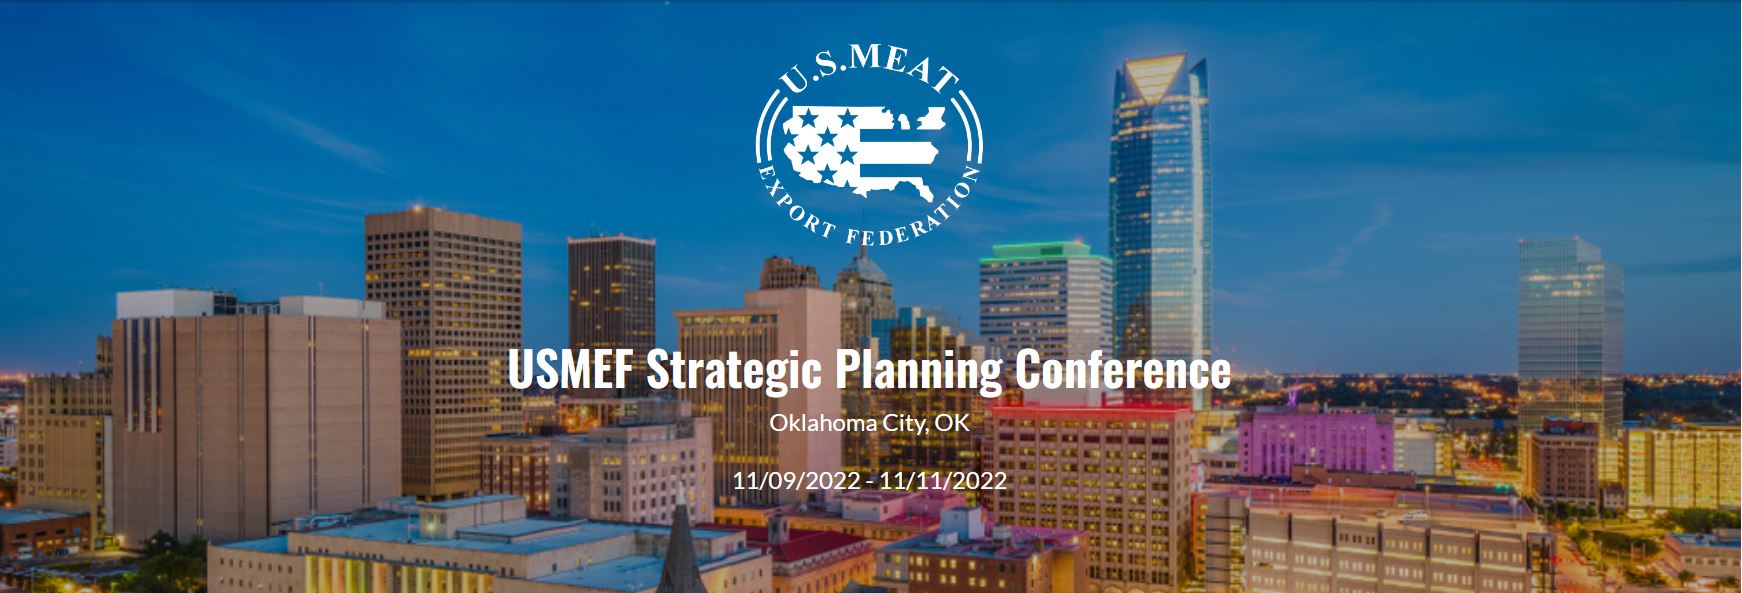 USMEF Strategic Planning Conference